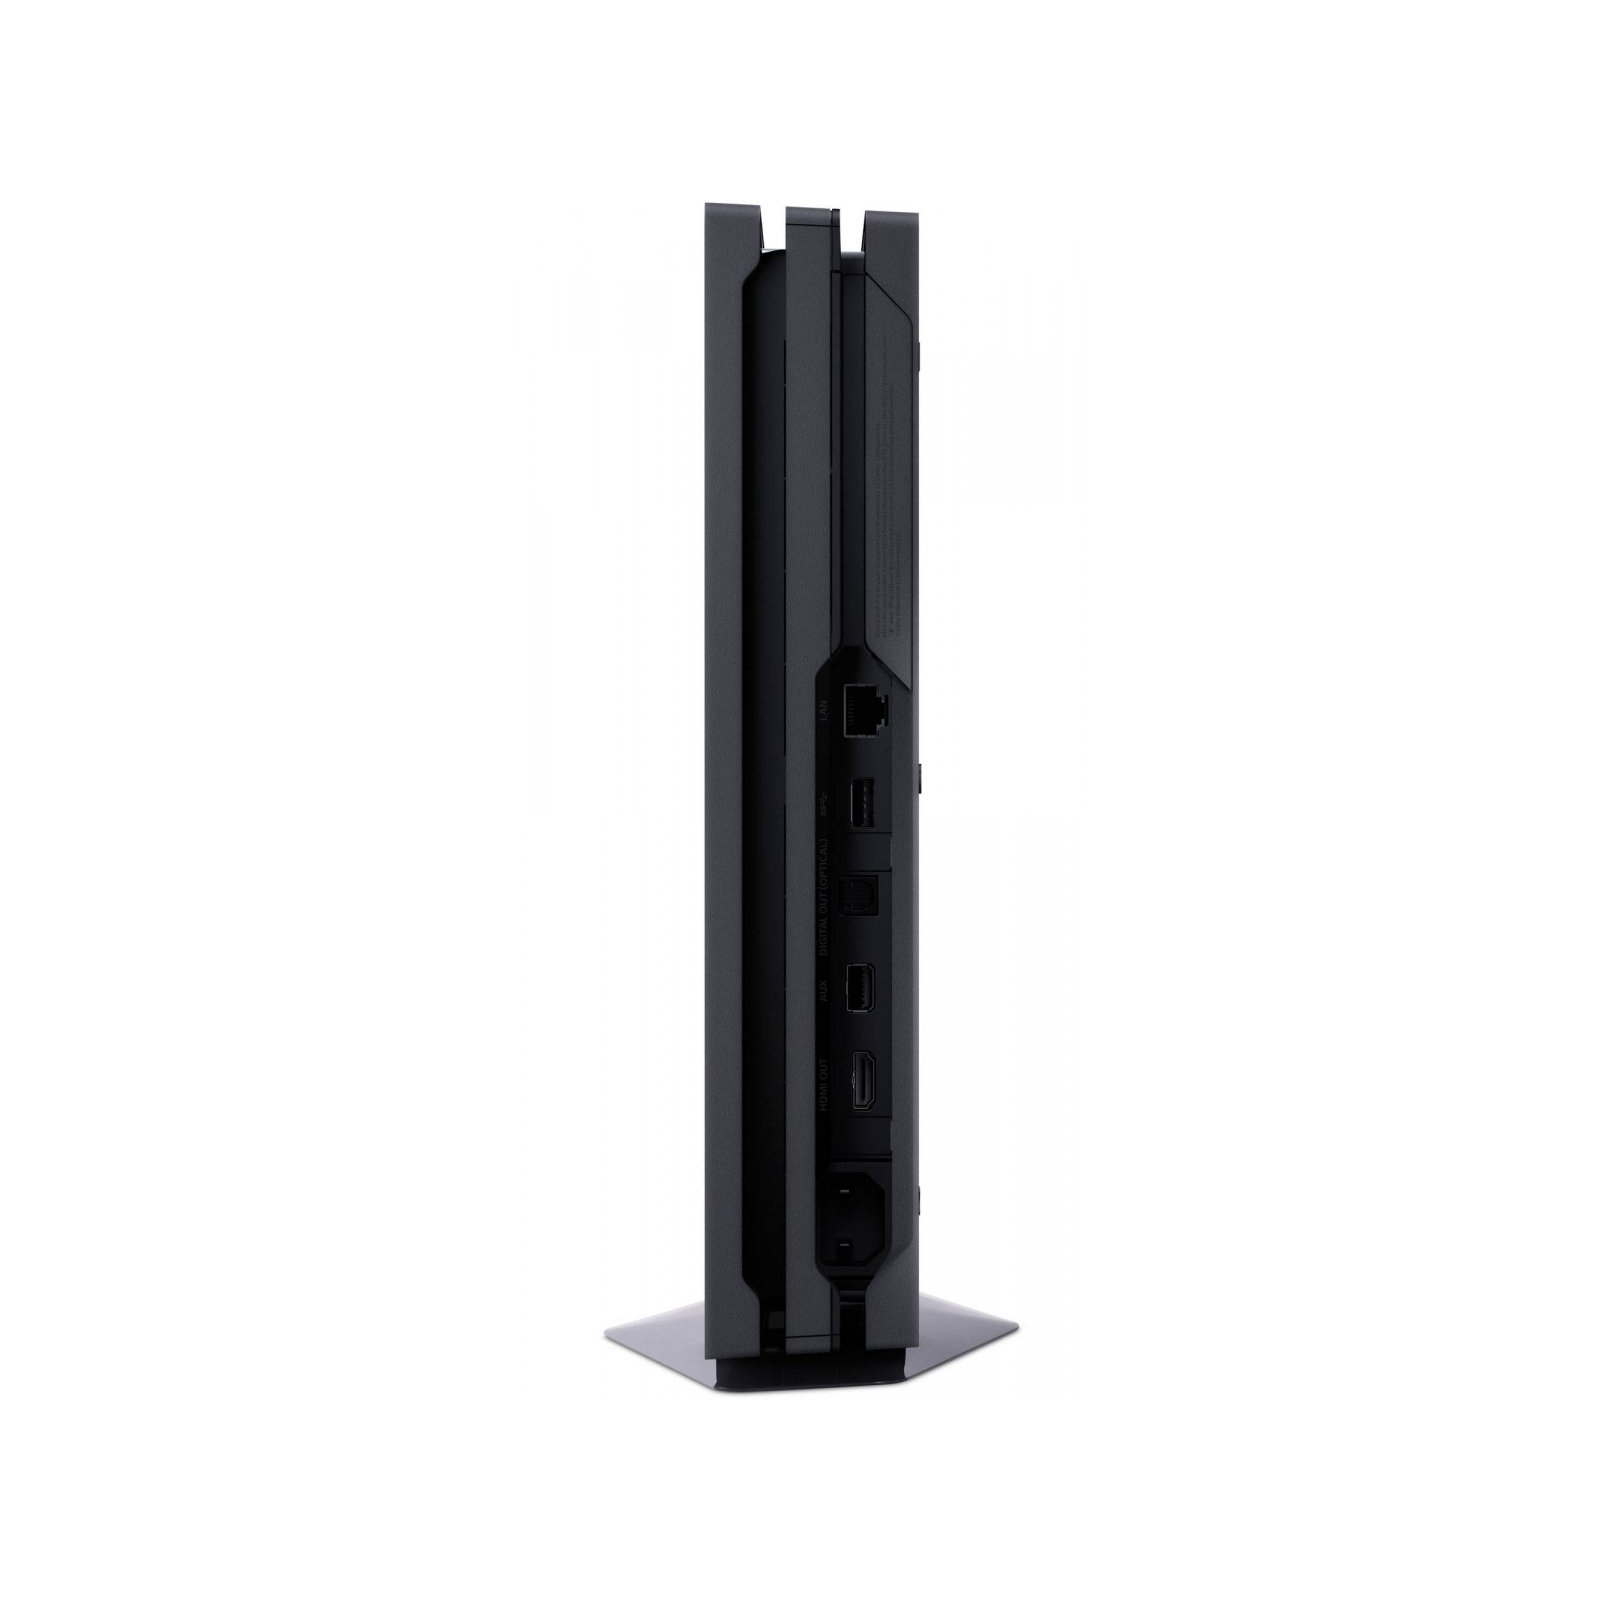 Игровая консоль Sony PlayStation 4 Pro 1Tb Black (9887850) изображение 7